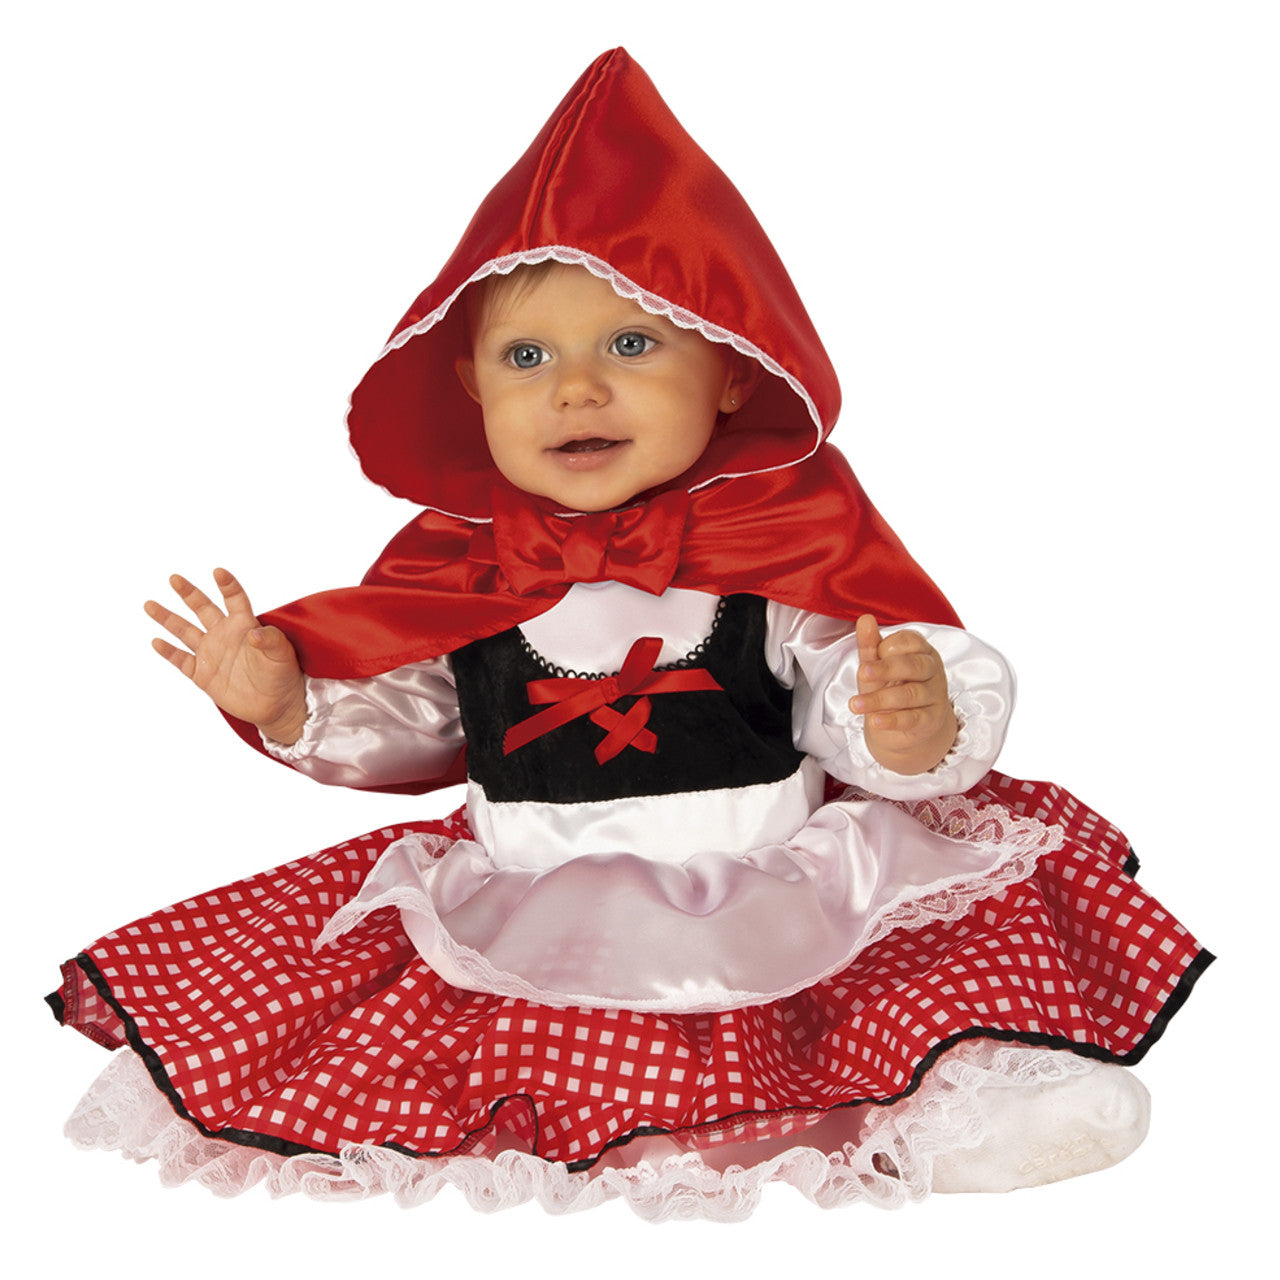 Acquista online costume da Cappuccetto Rosso per bebé